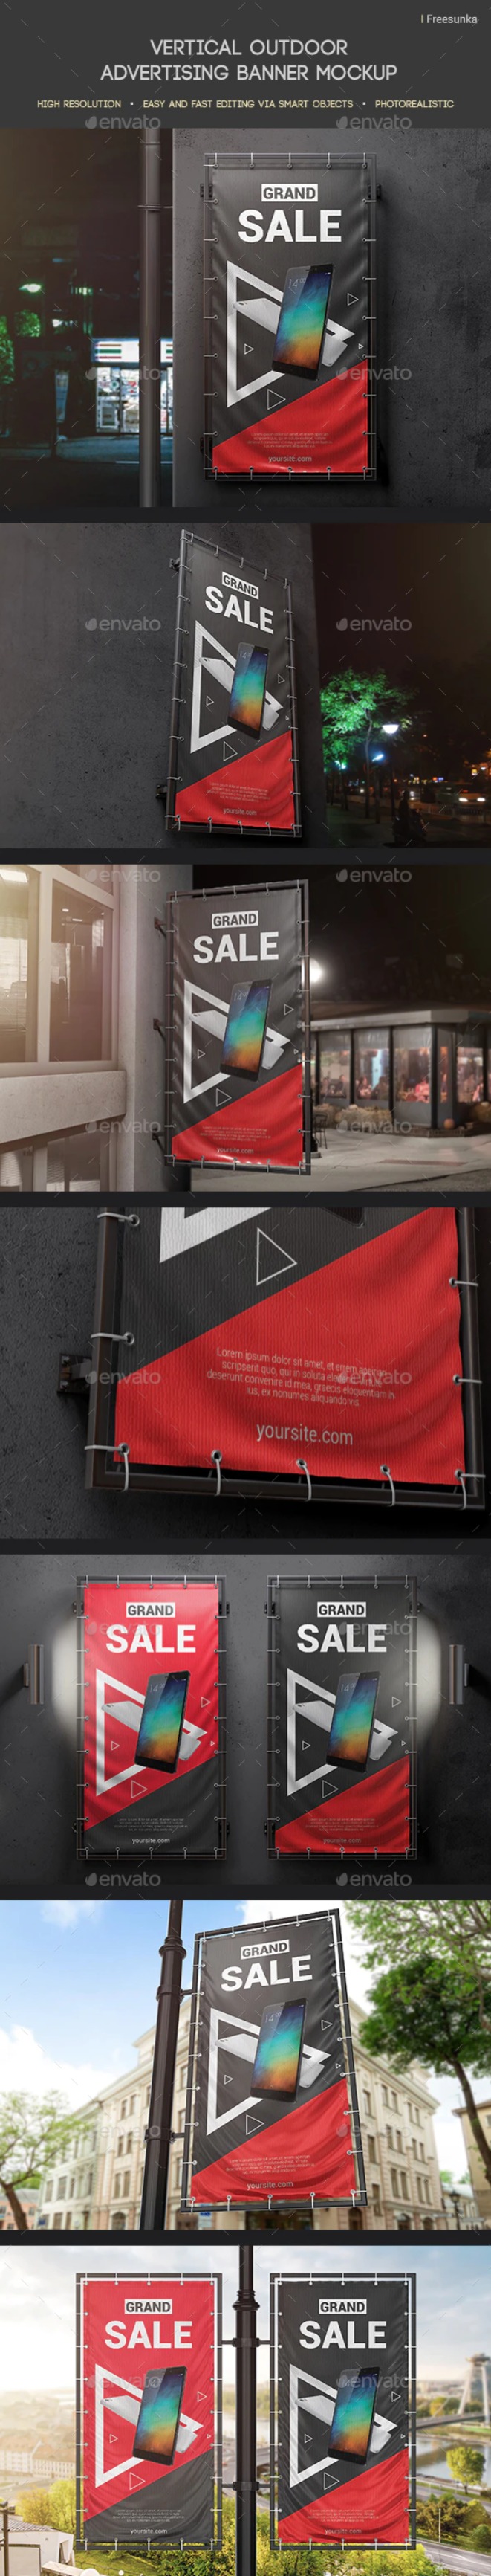 垂直户外广告横幅广告牌样机设计模板